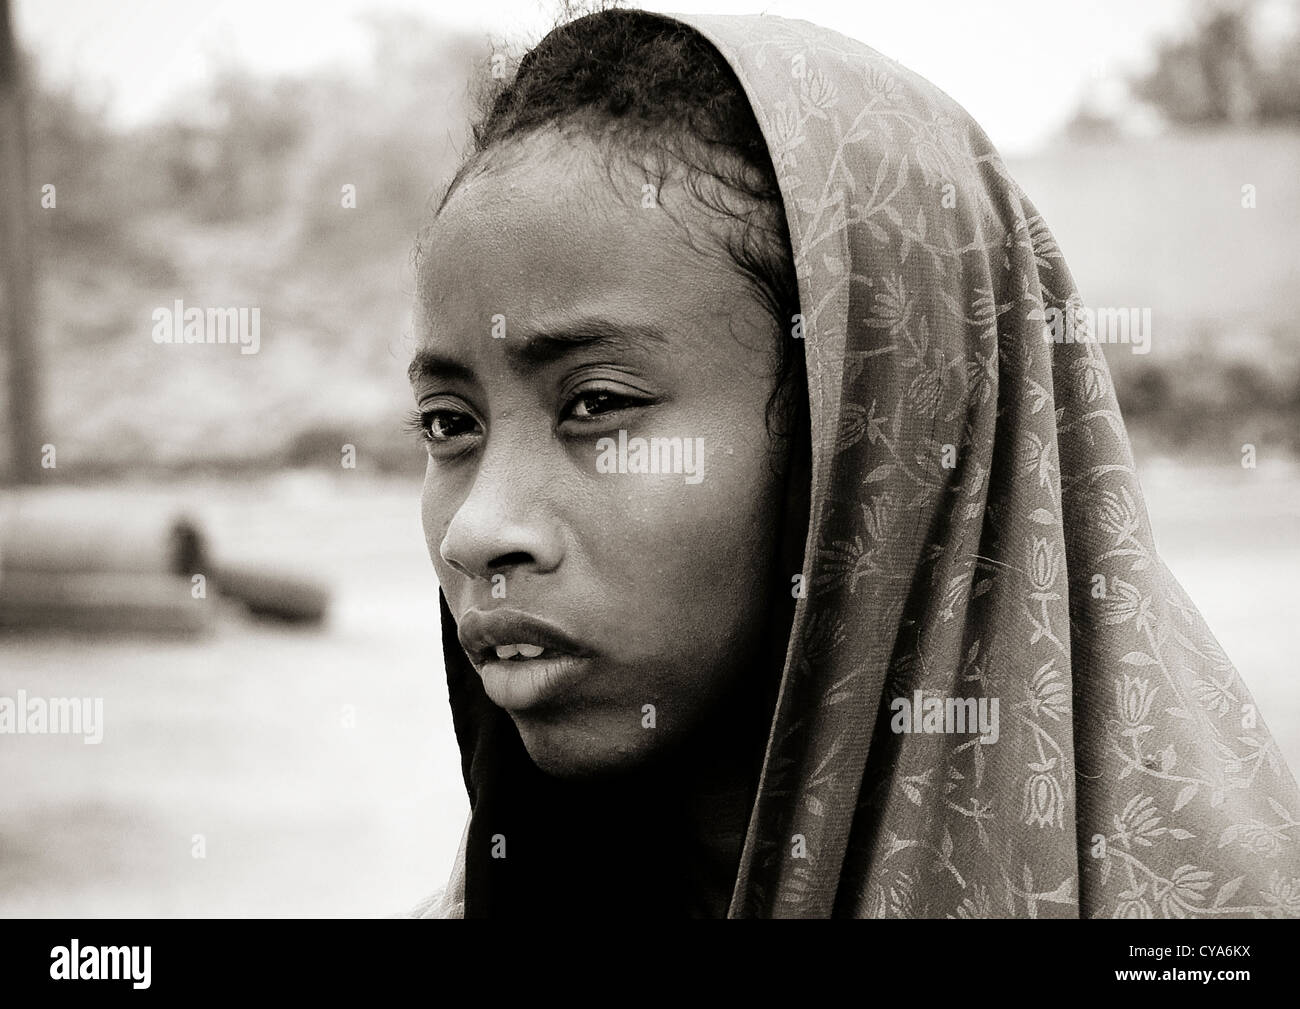 Muslimische eritreischen Frau, Massawa, Eritrea Stockfotografie - Alamy